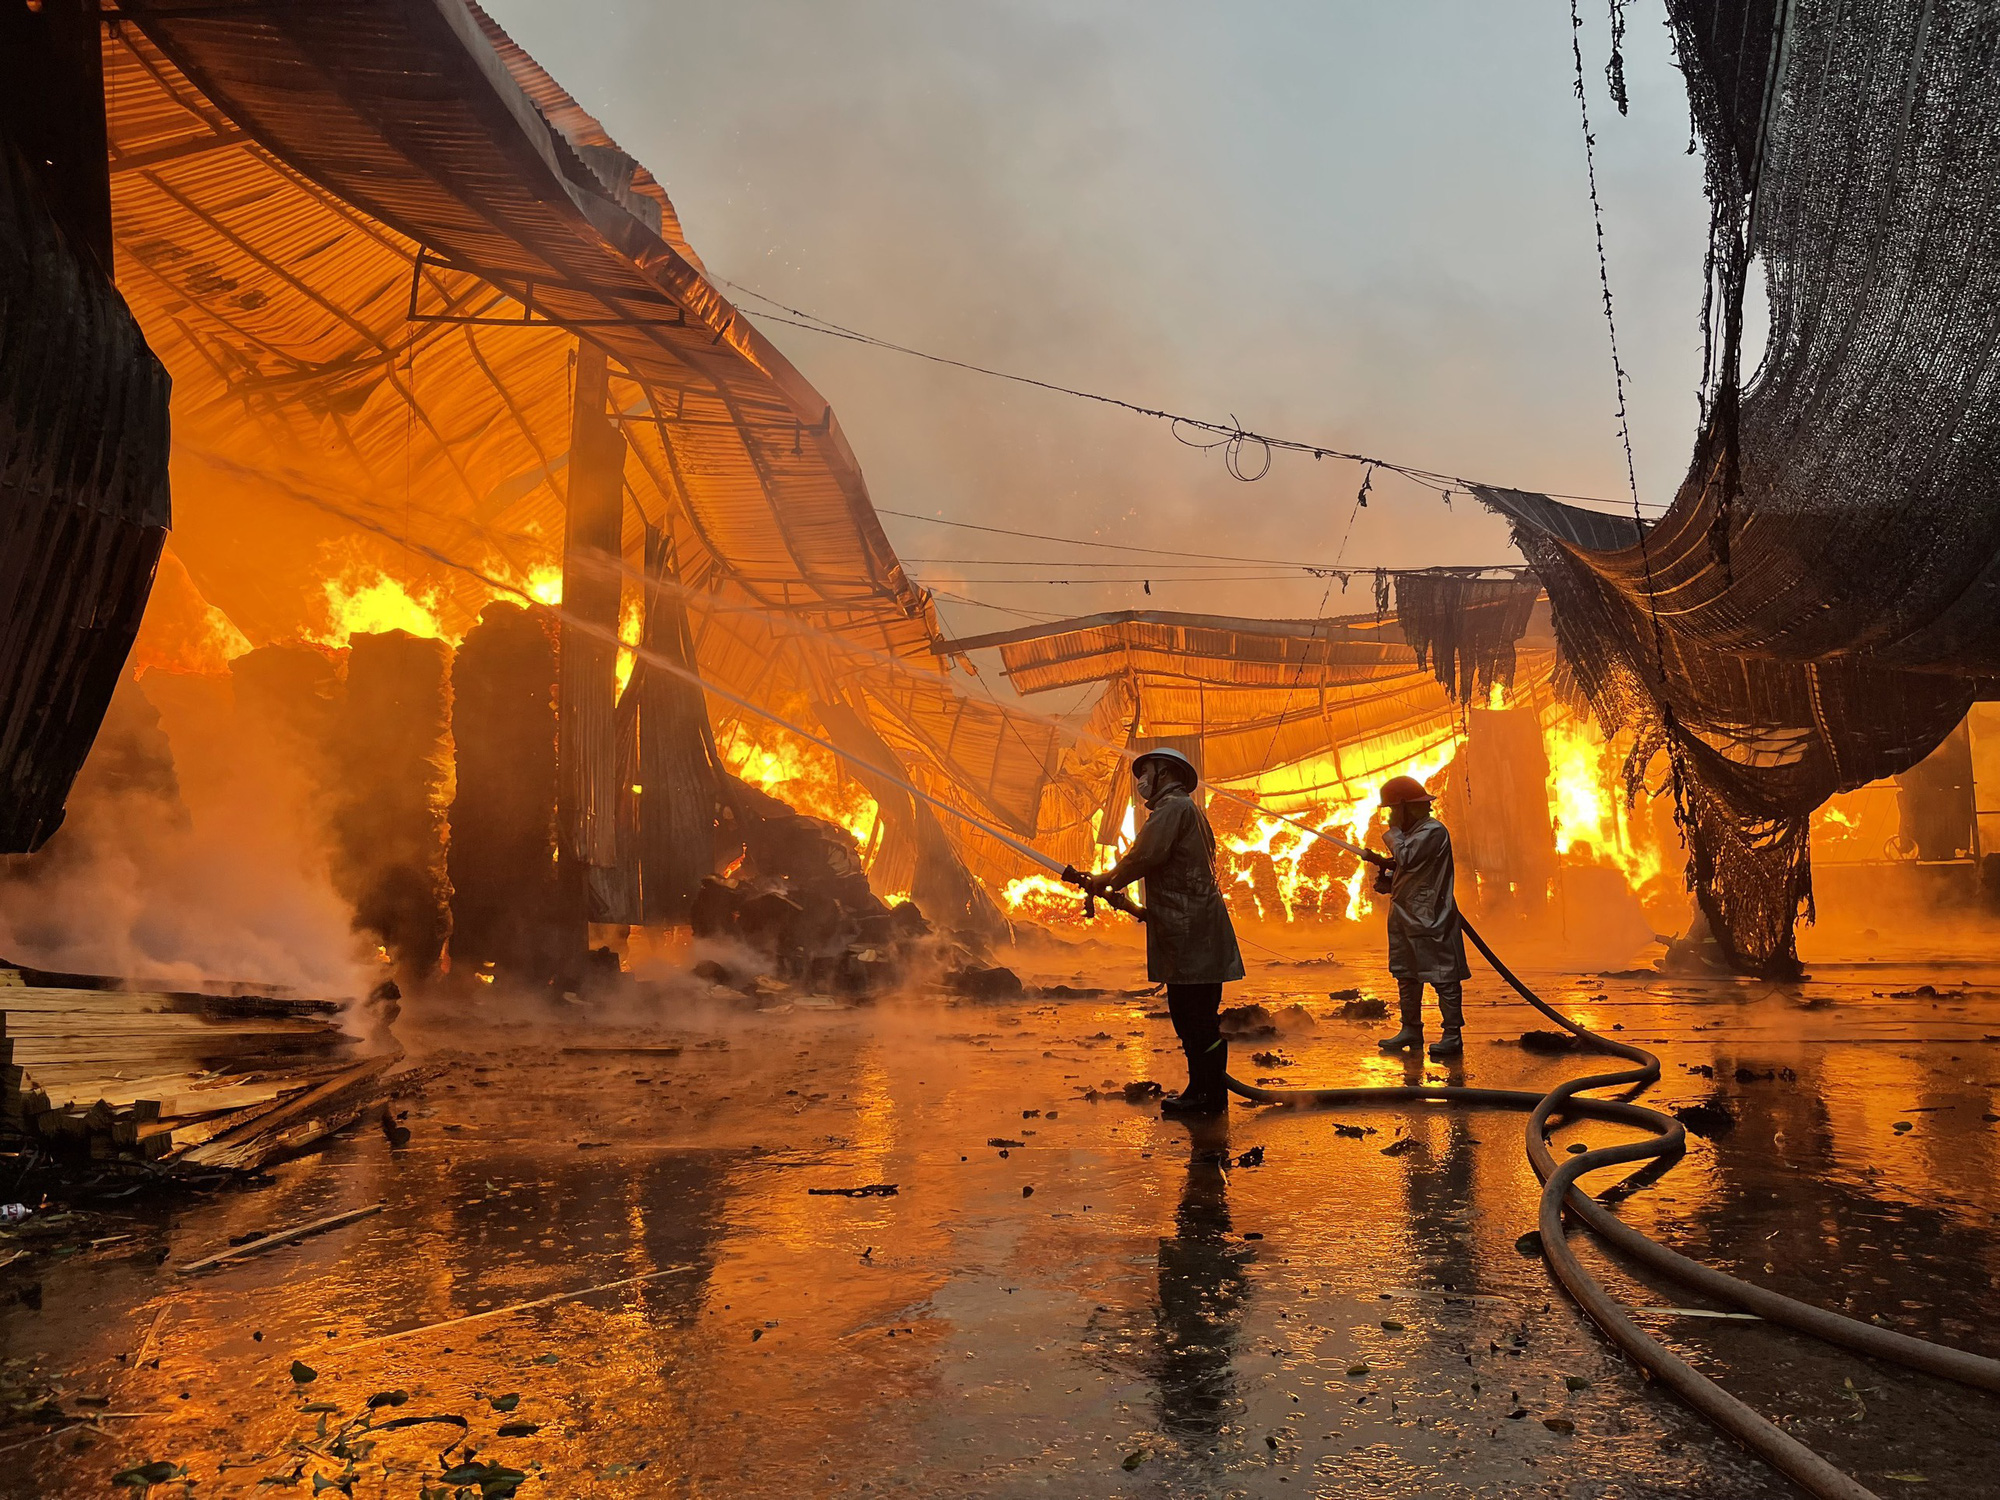 Gần 100 cảnh sát chữa cháy xưởng gỗ ở Hà Nội - Ảnh 1.